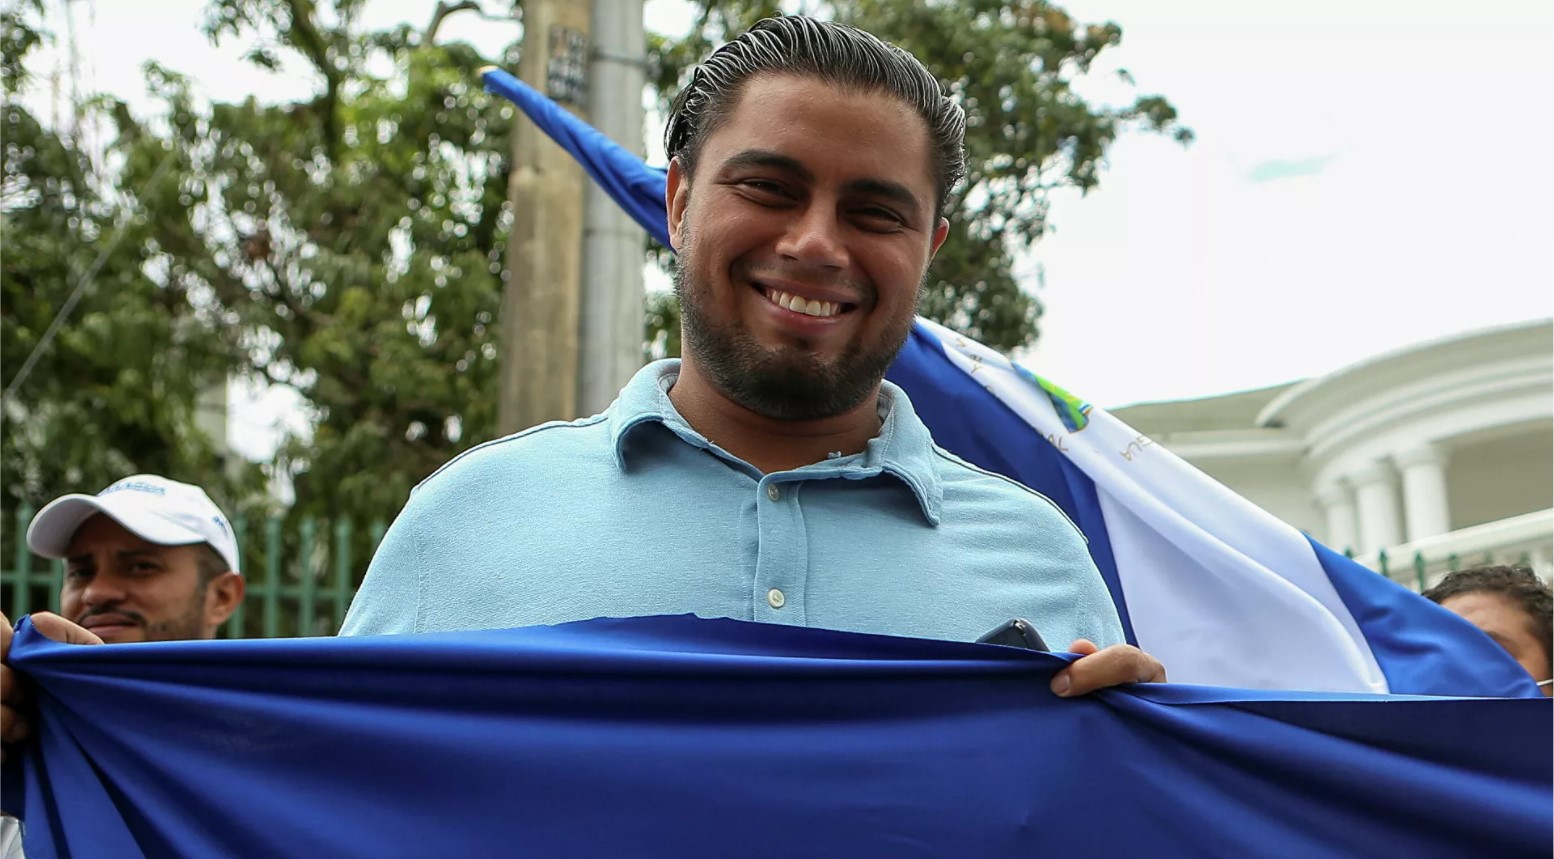 Tirotean a activista de Nicaragua en Costa Rica